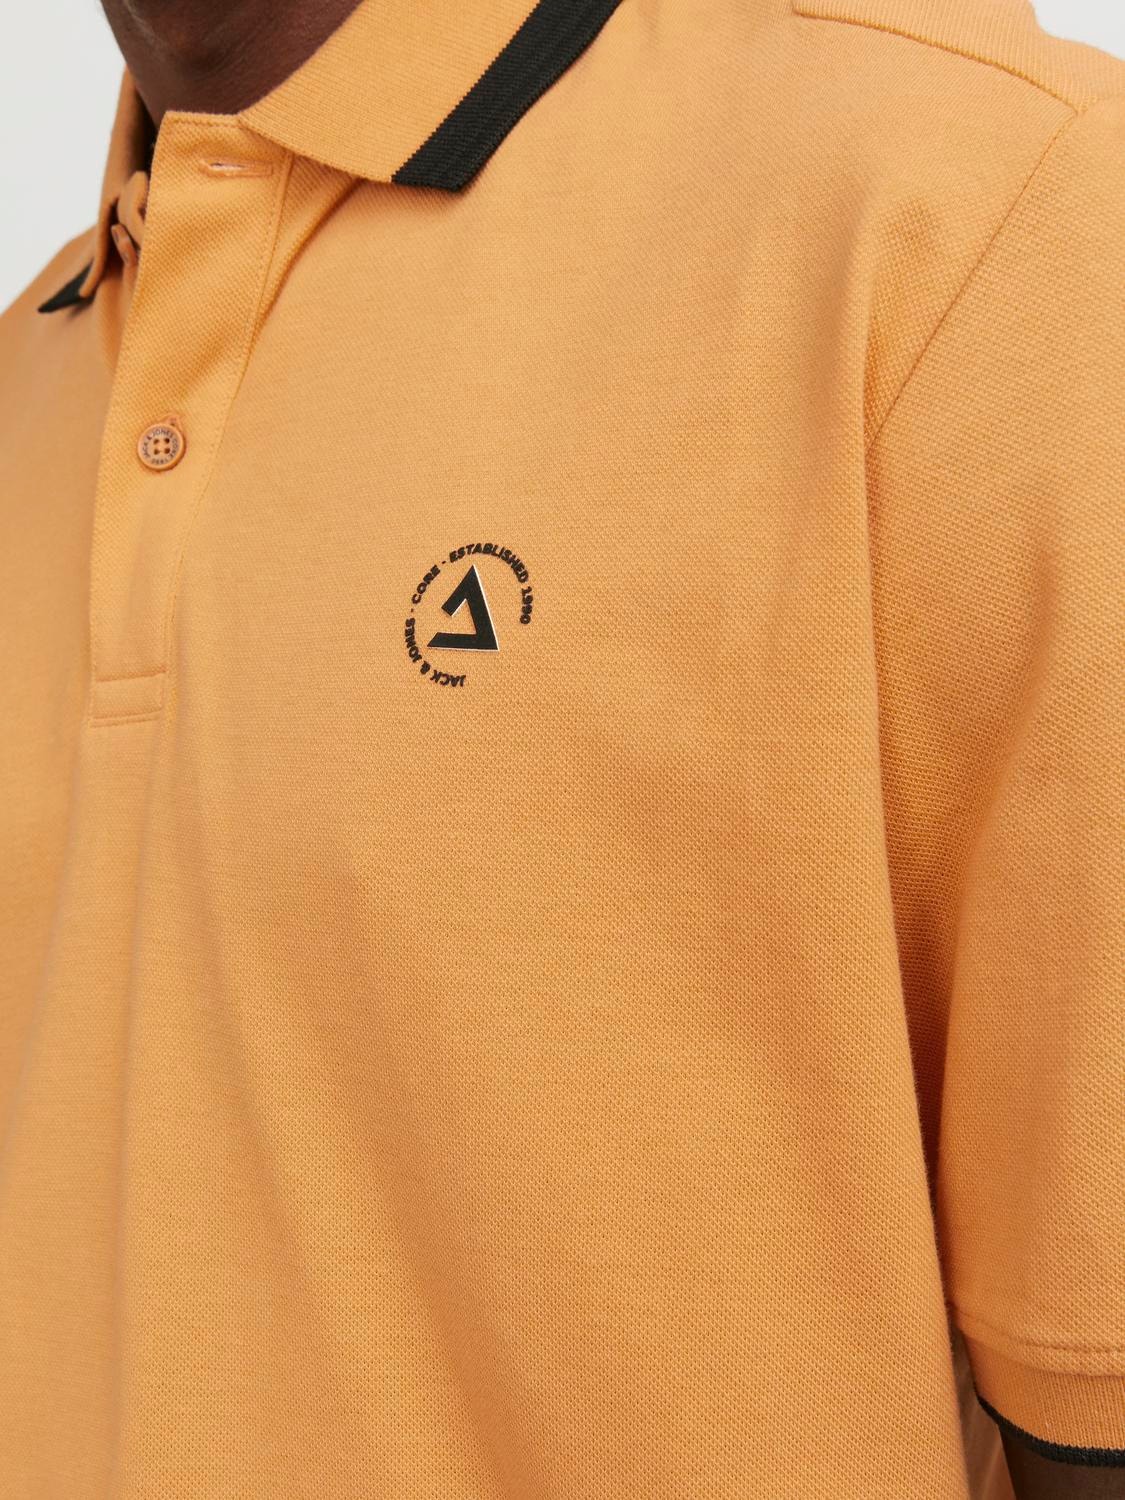 Jack & Jones Plain Polo T-shirt -Tangerine - 12252395